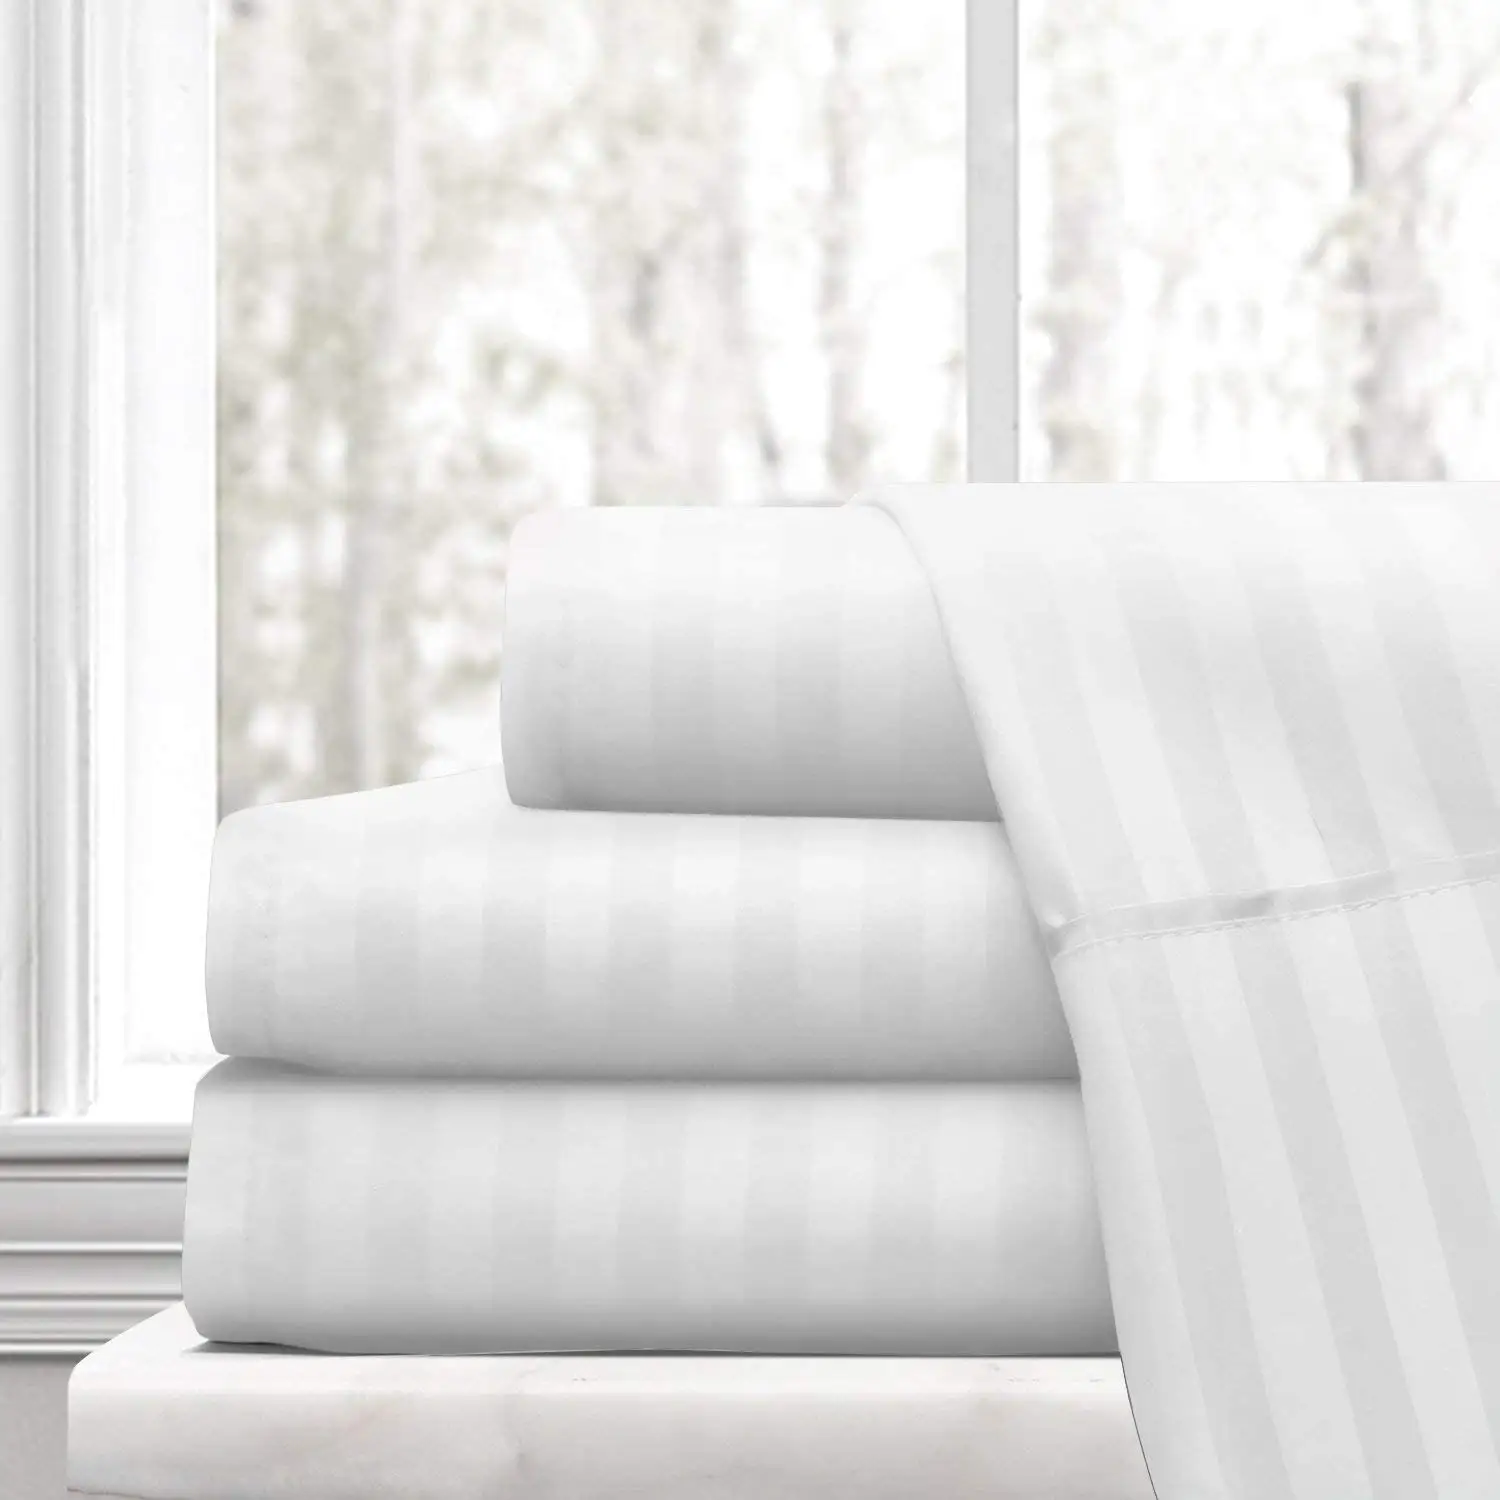 Sábana de lino de Hotel a rayas de polialgodón, tela de satén orgánico de 2,5 cm de ancho y 100% de algodón, Color blanco, venta al por mayor